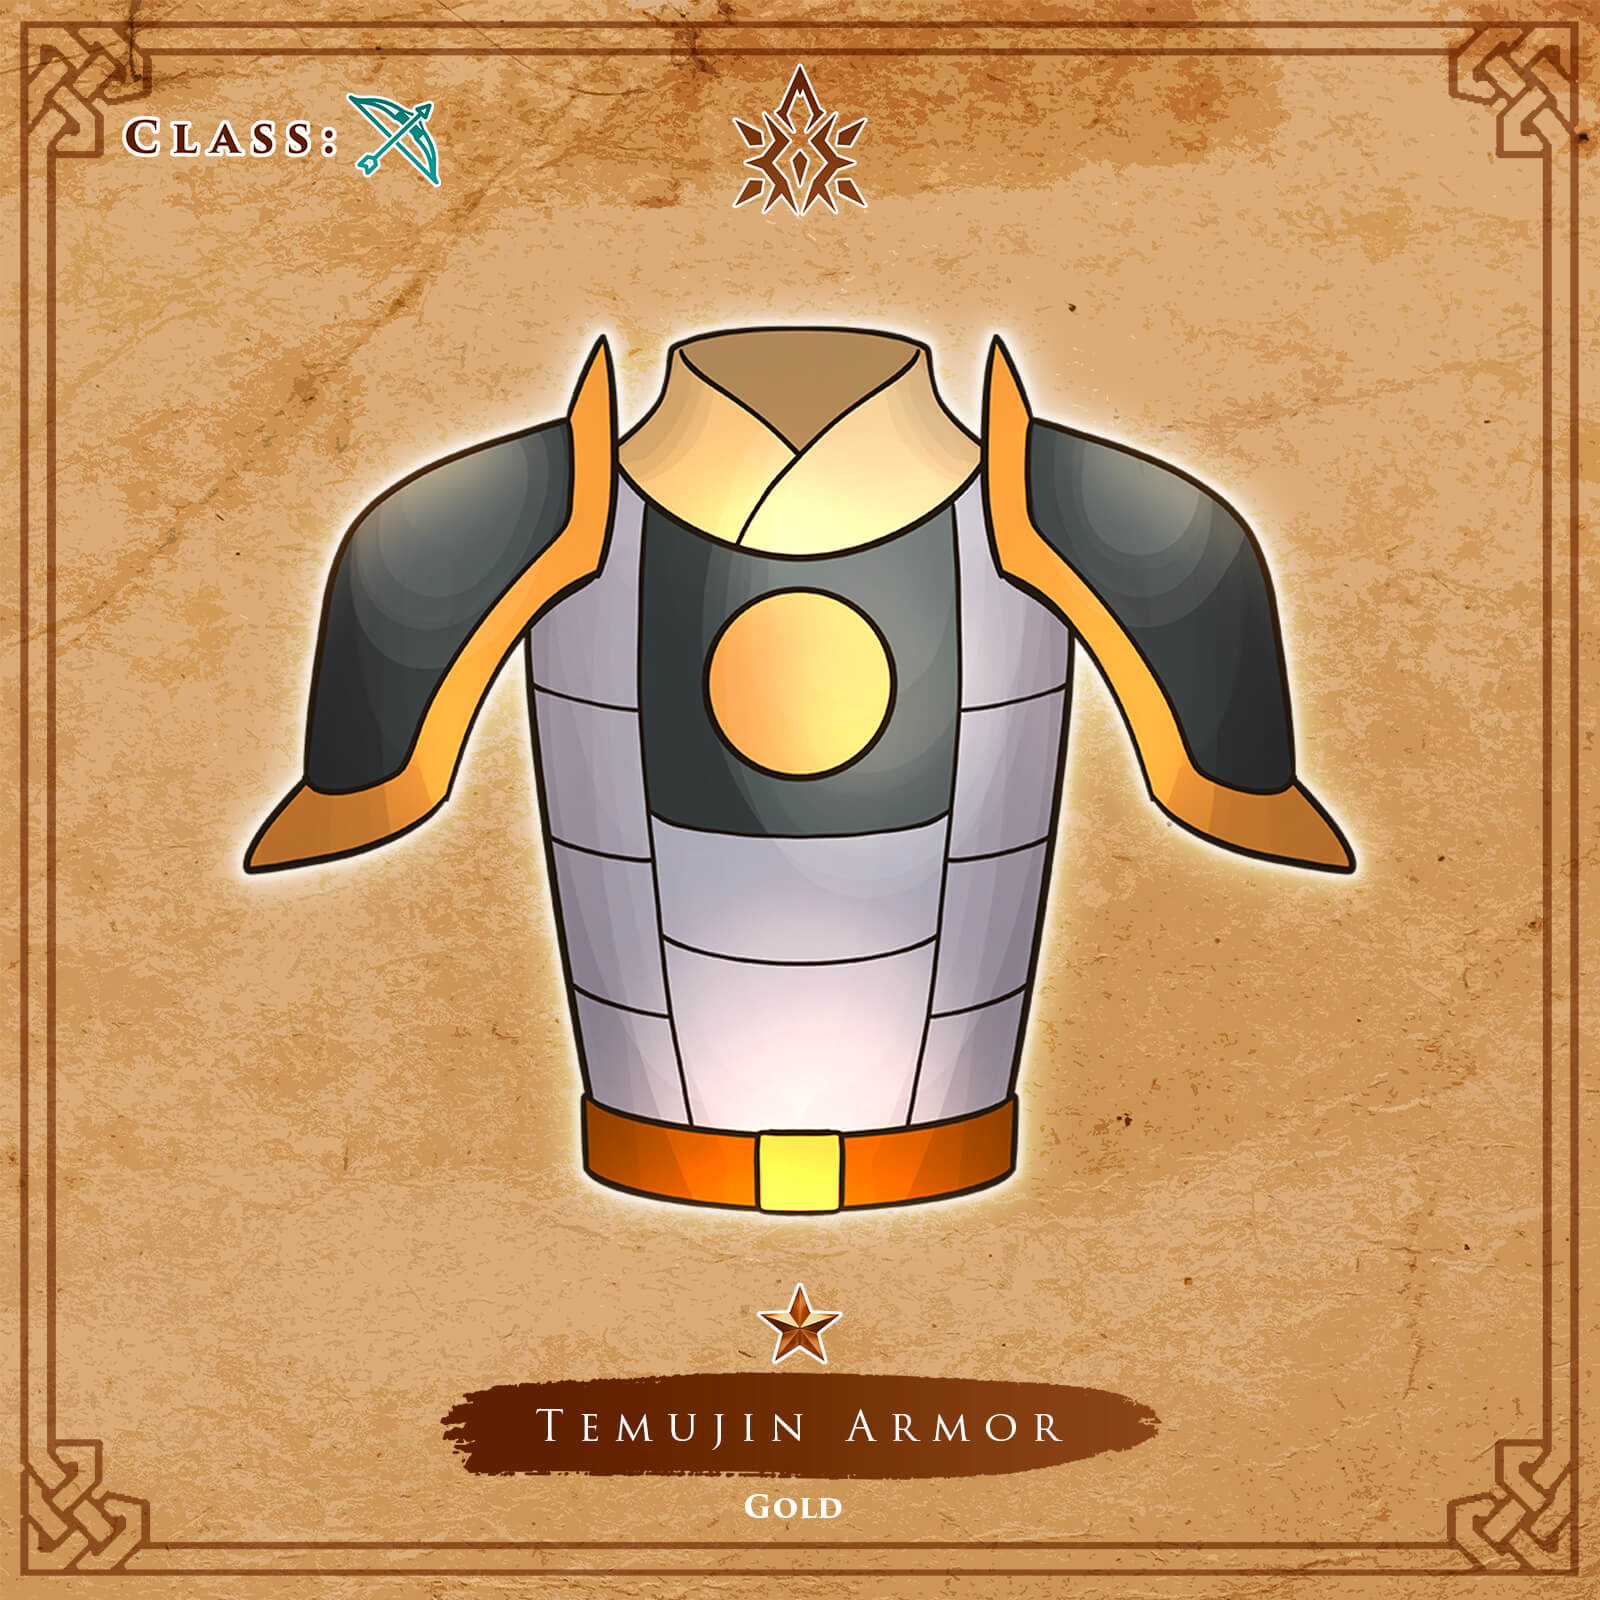 Temujin Armor Gold